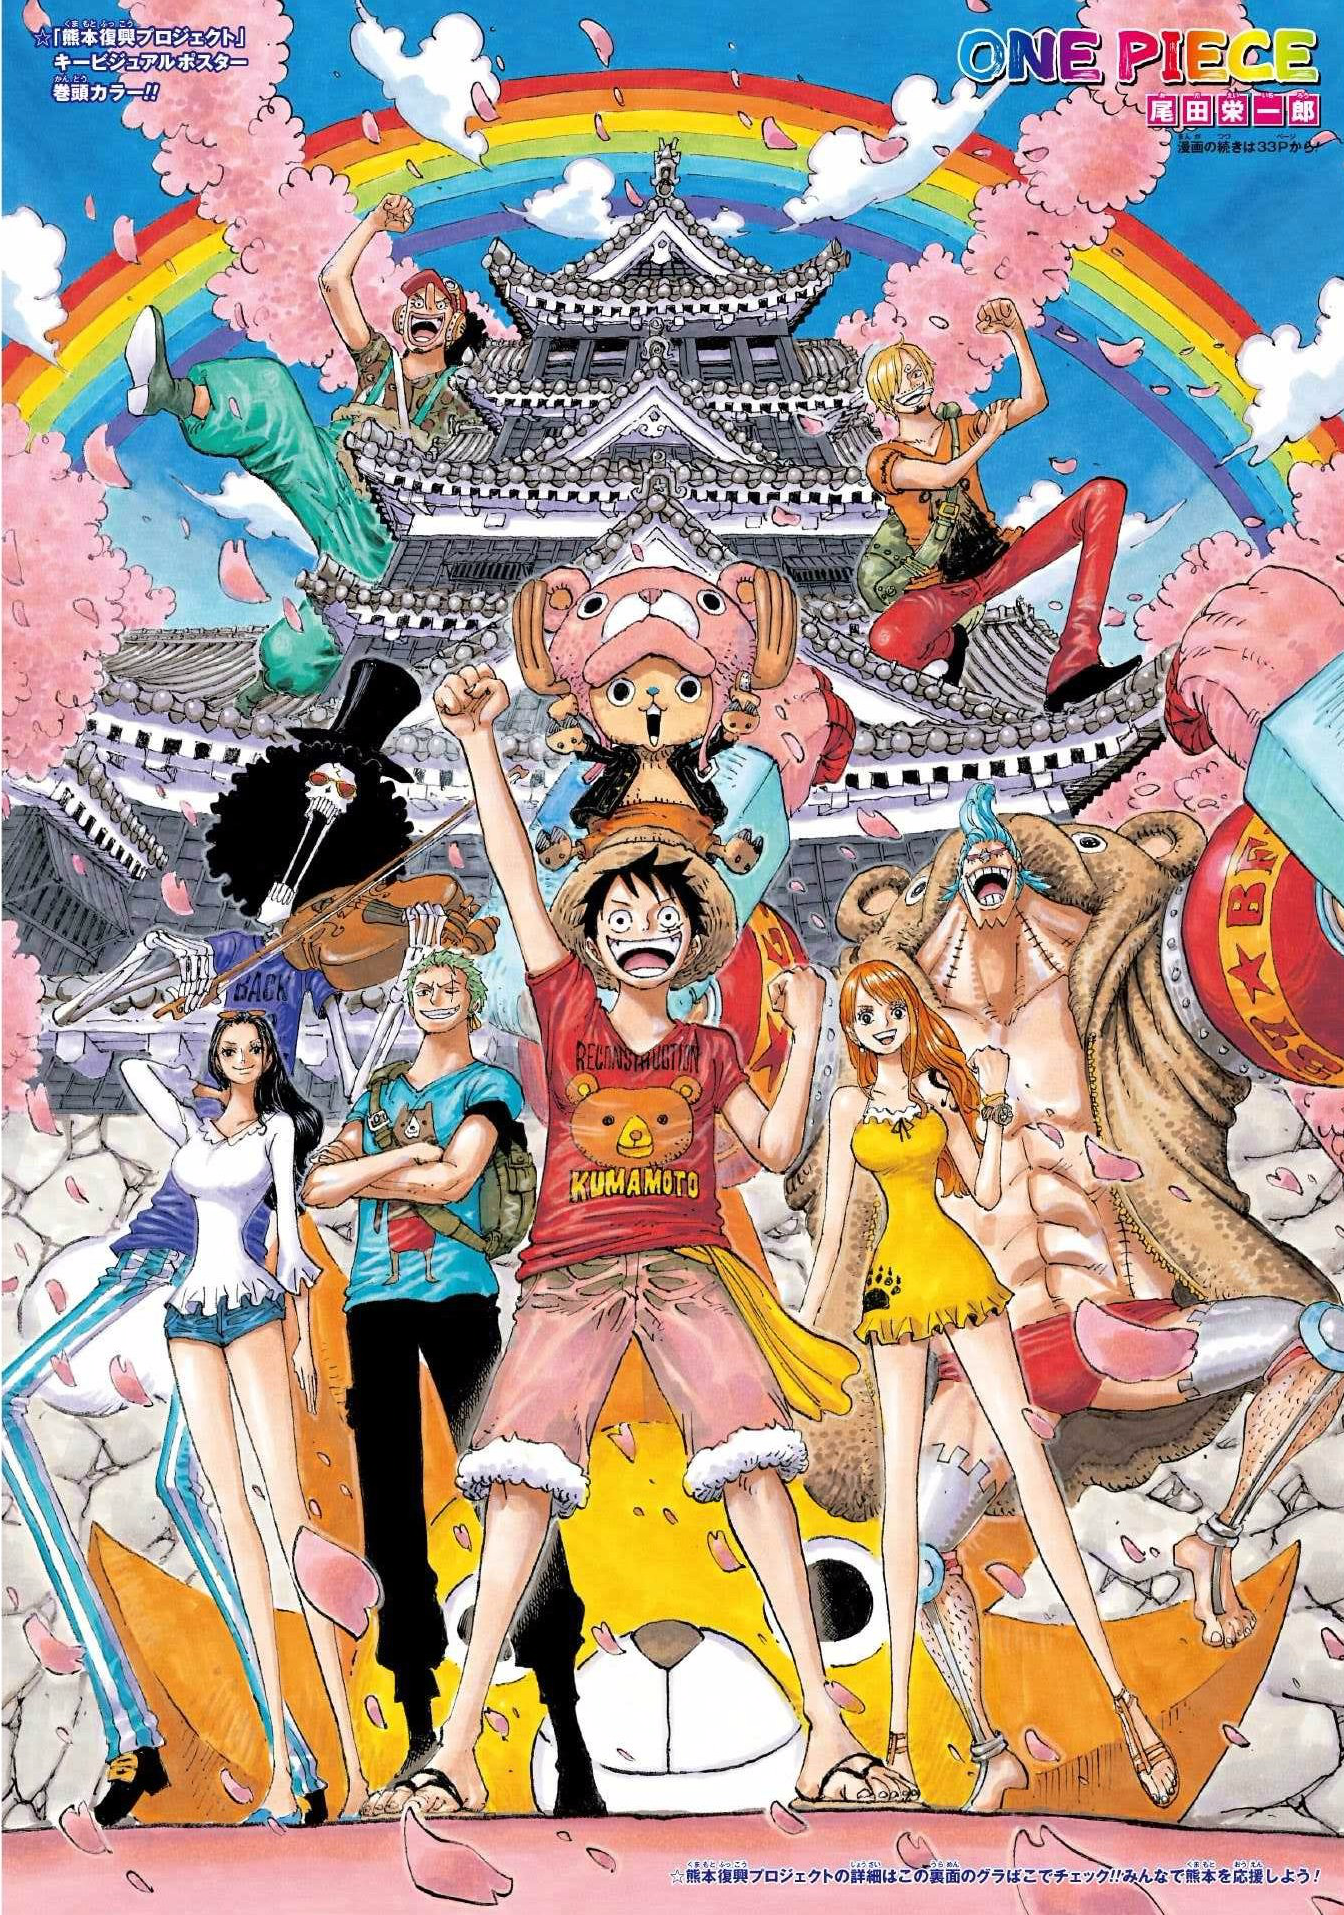 Chapter 843 | One Piece Wiki | Fandom